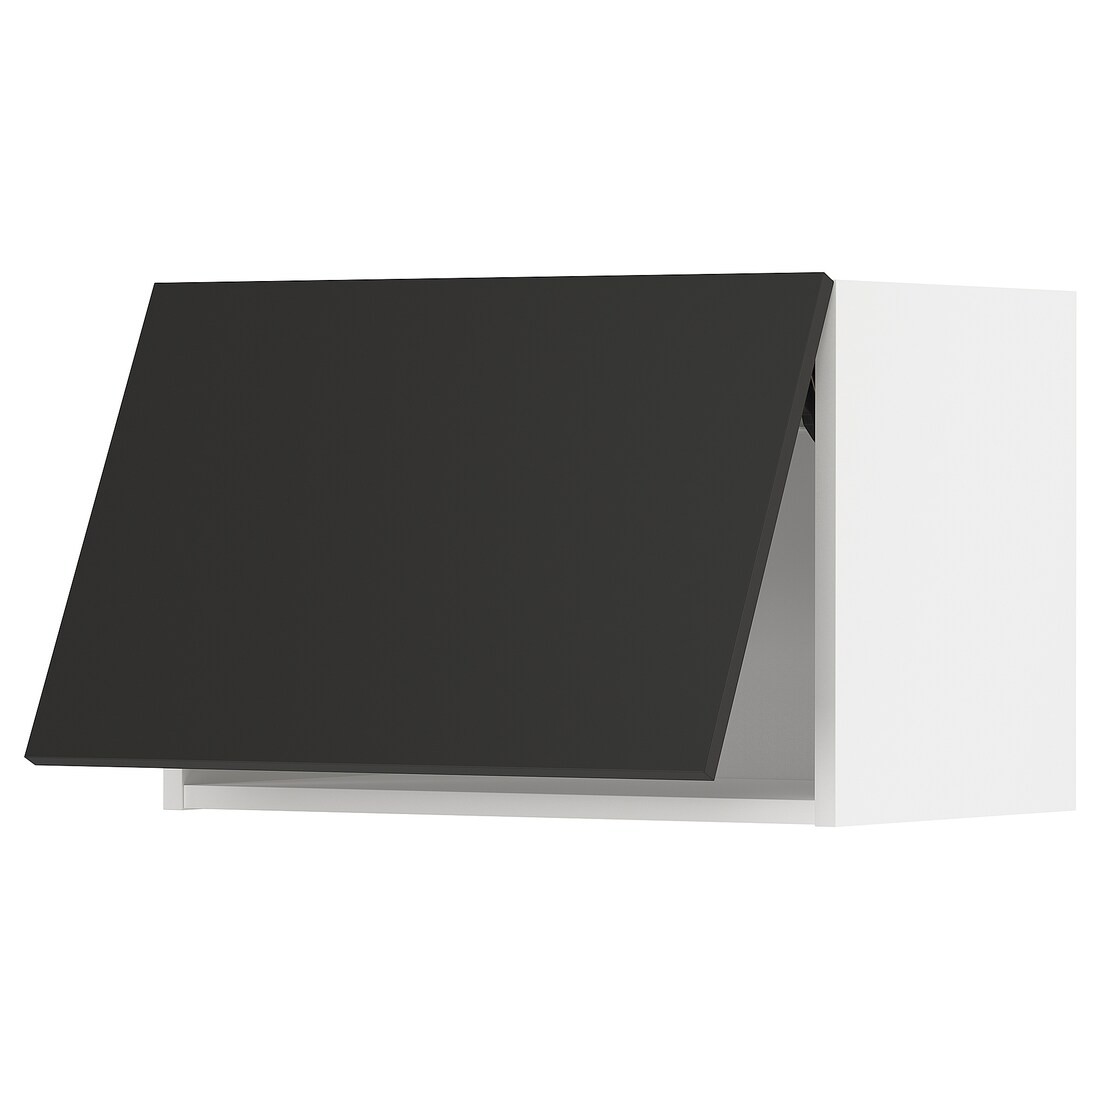 METOD МЕТОД Навесной горизонтальный шкаф, белый / Nickebo матовый антрацит, 60x40 см